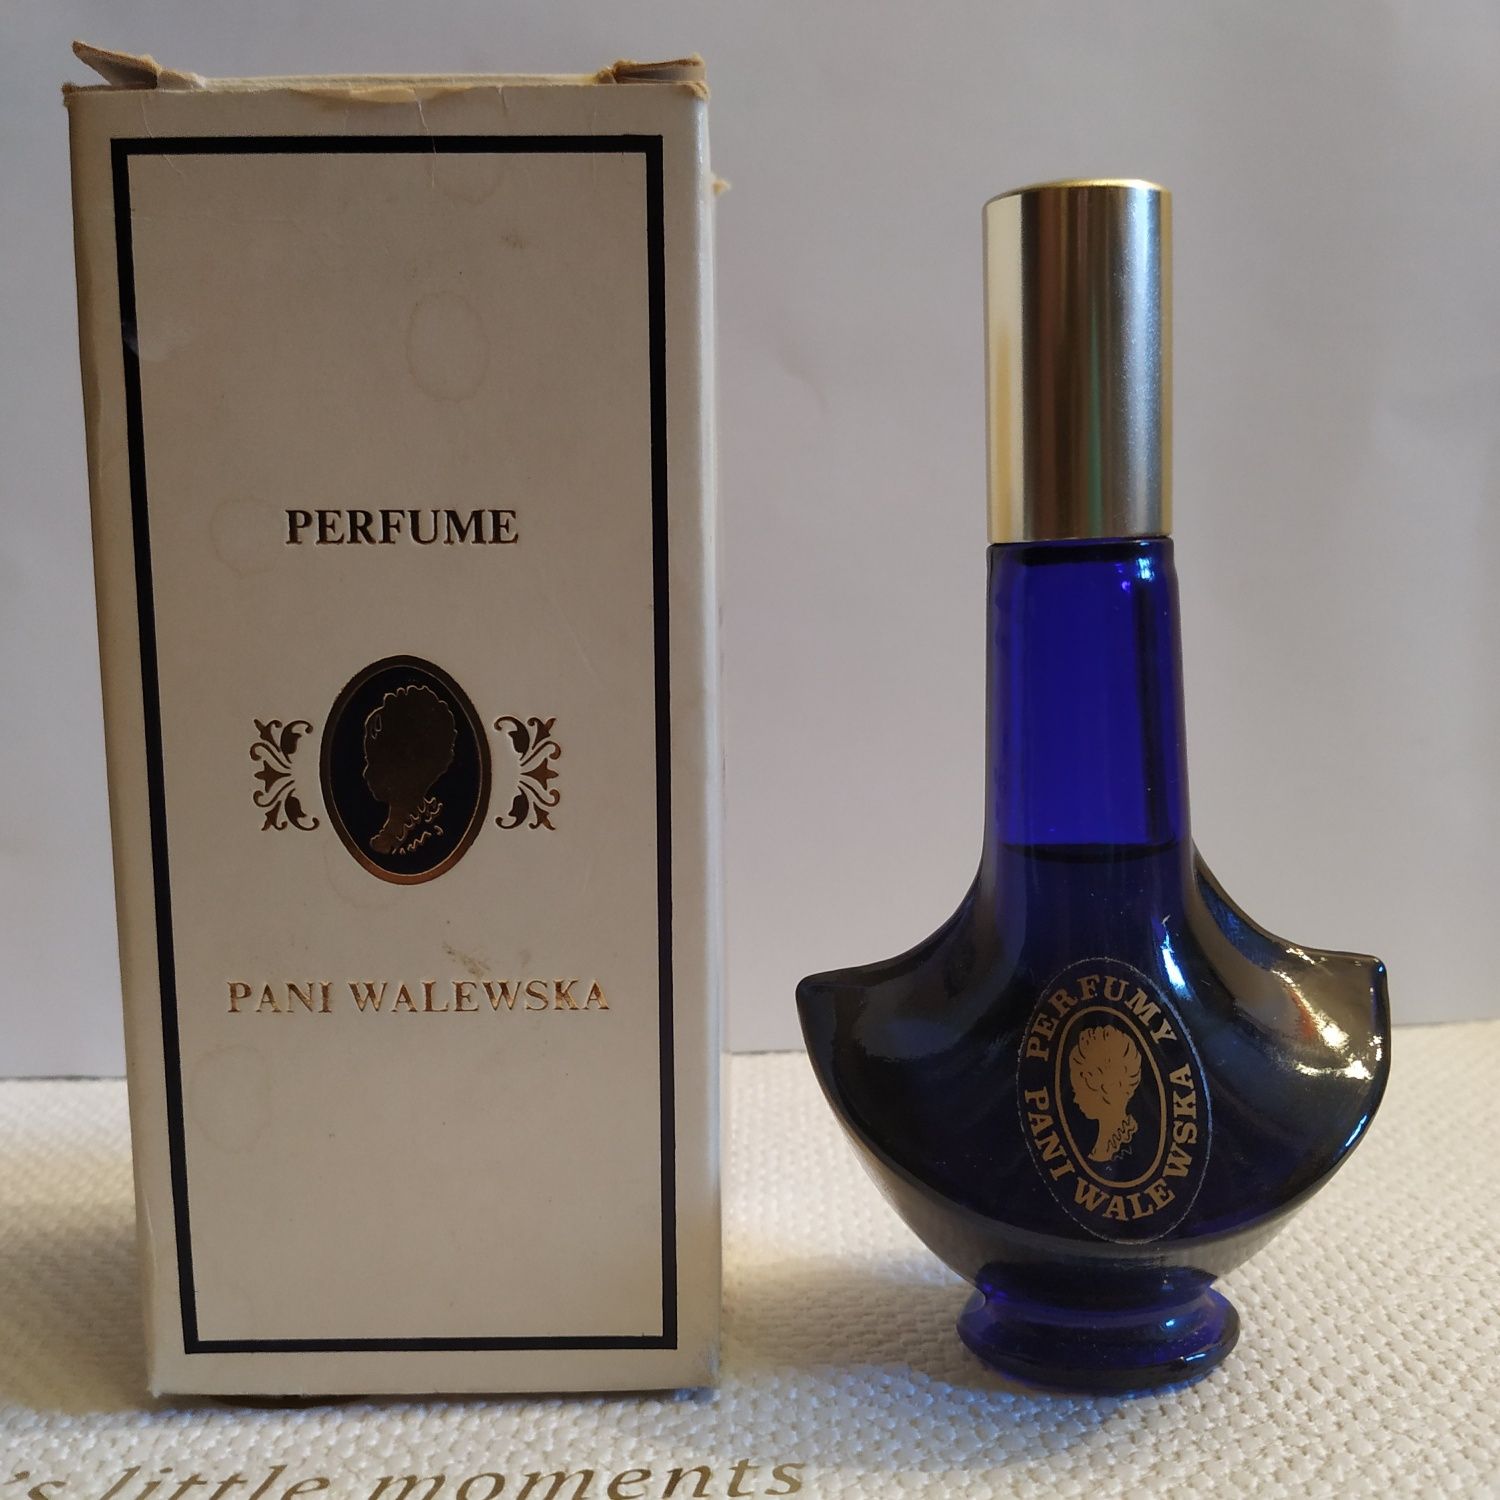 UNIKAT 30-letnie perfumy Pani Walewska dla kolekcjonerów 1990 pełne